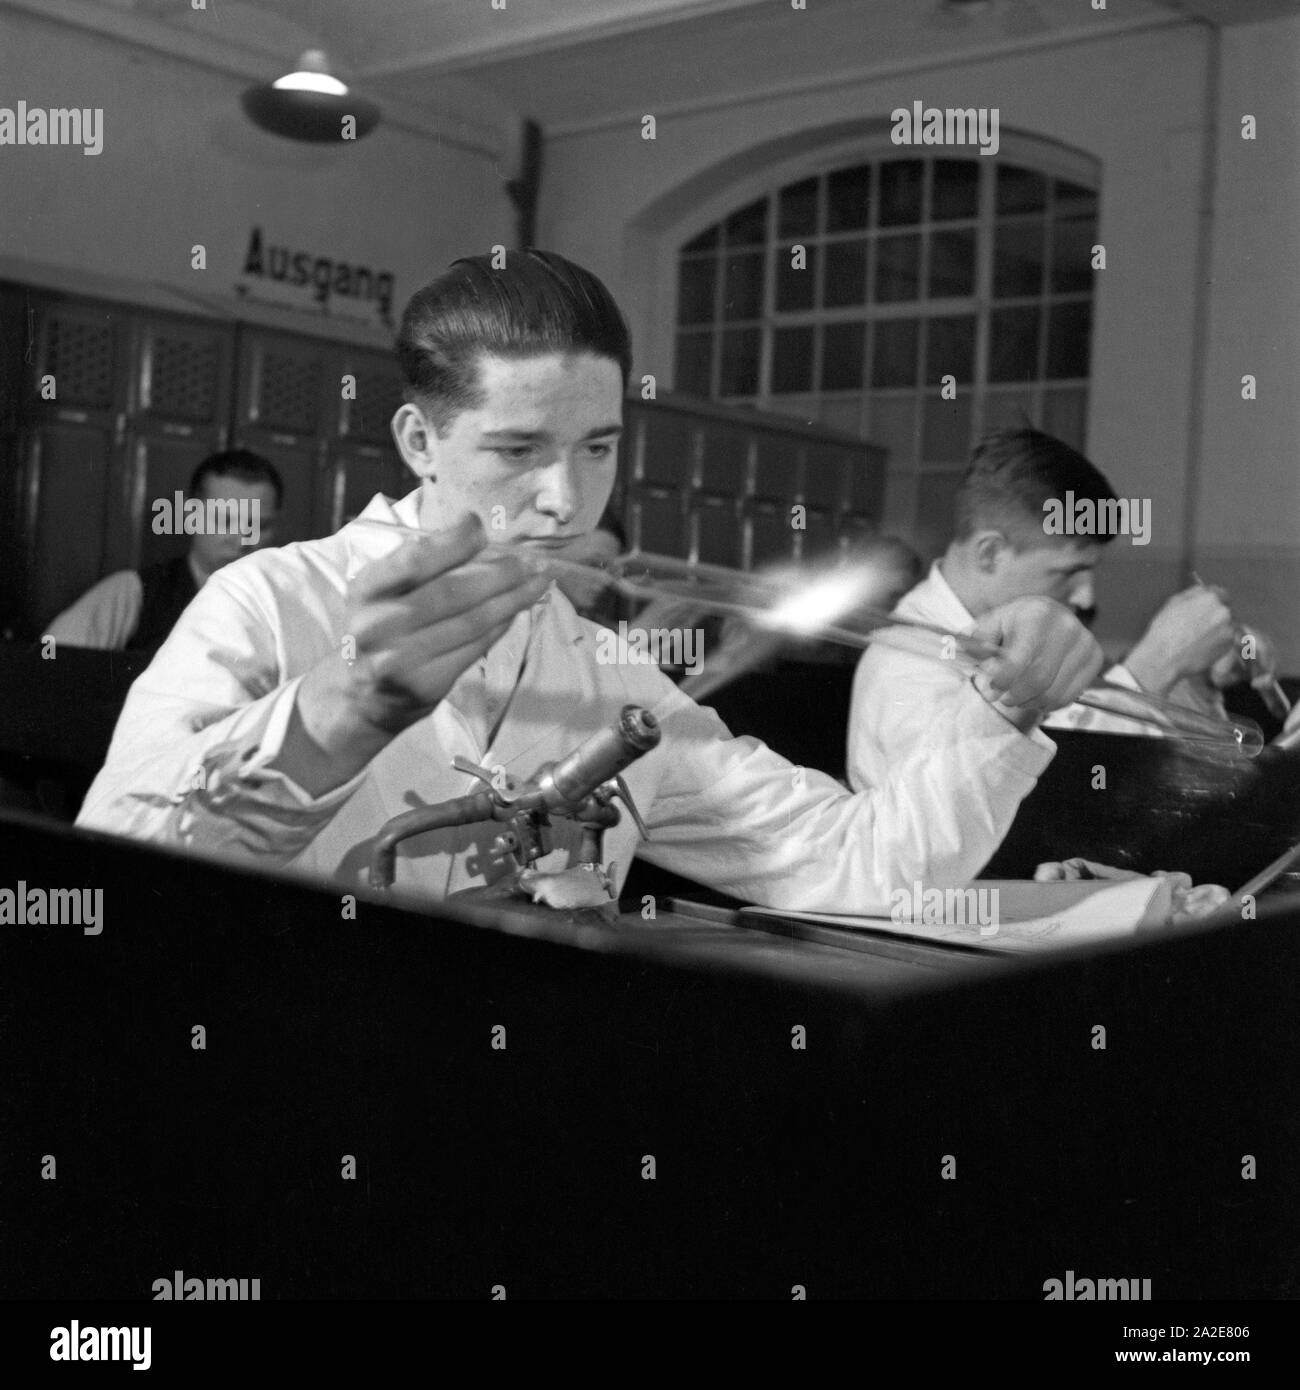 Glasbläser Teilnehmber als beim Reichsberufswettkampf 1937, Deutschland 1930er Jahre. Glassblower come un concorrente del Reichsberufswettkampf Contest 1937, Germania 1930s. Foto Stock